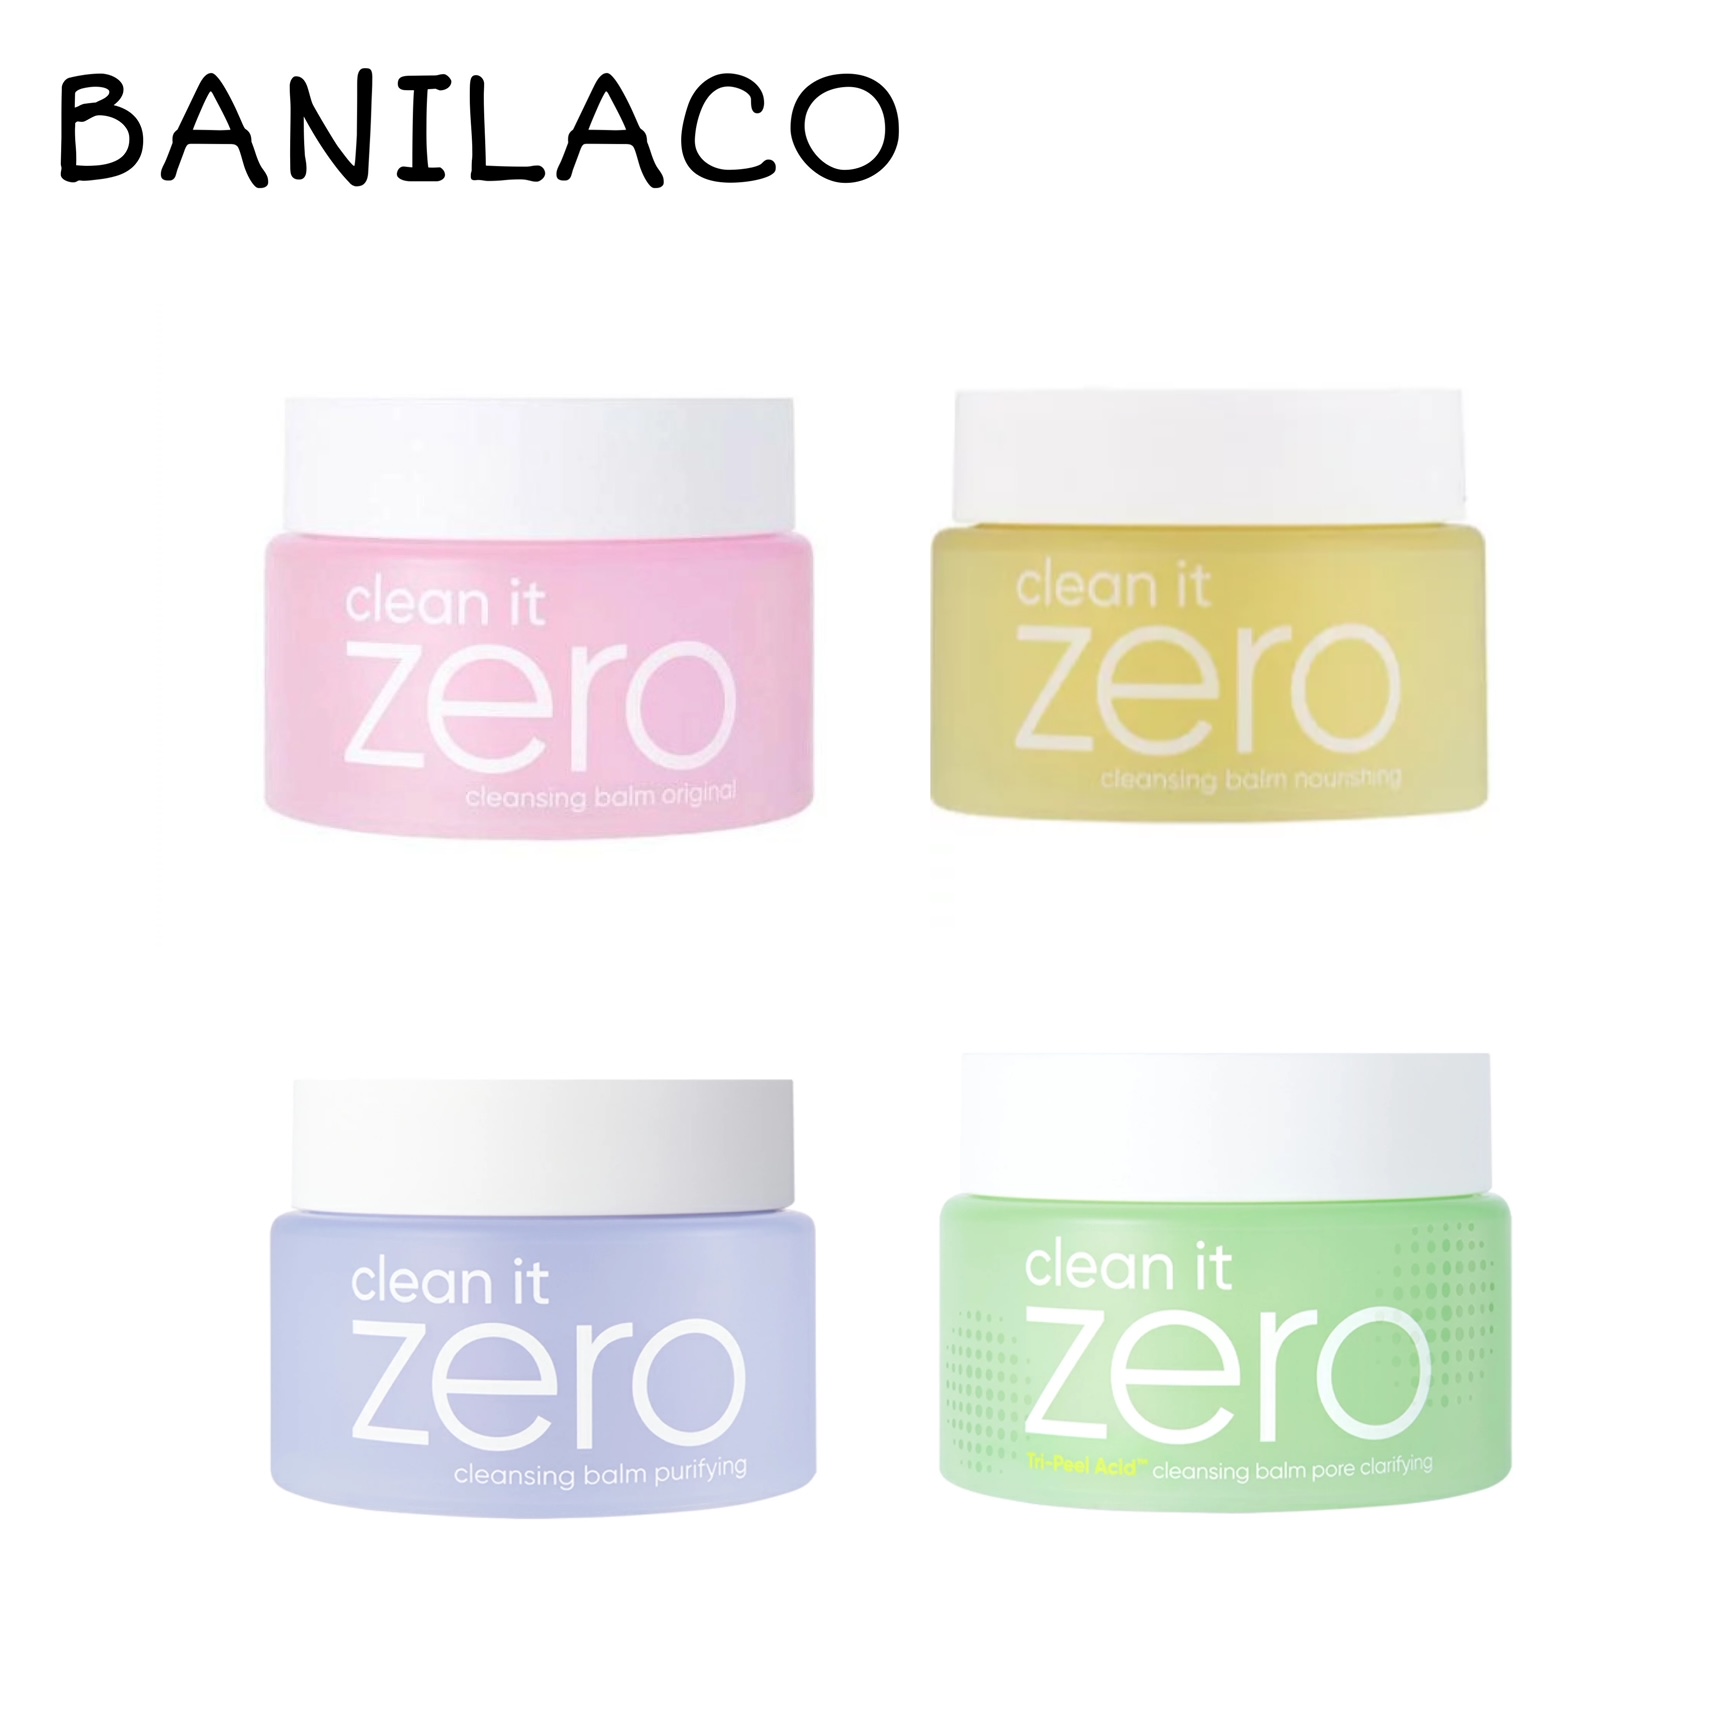 BANILACO CLEAN IT ZERO バニラコ クレンジング バーム 125ml 全4種類